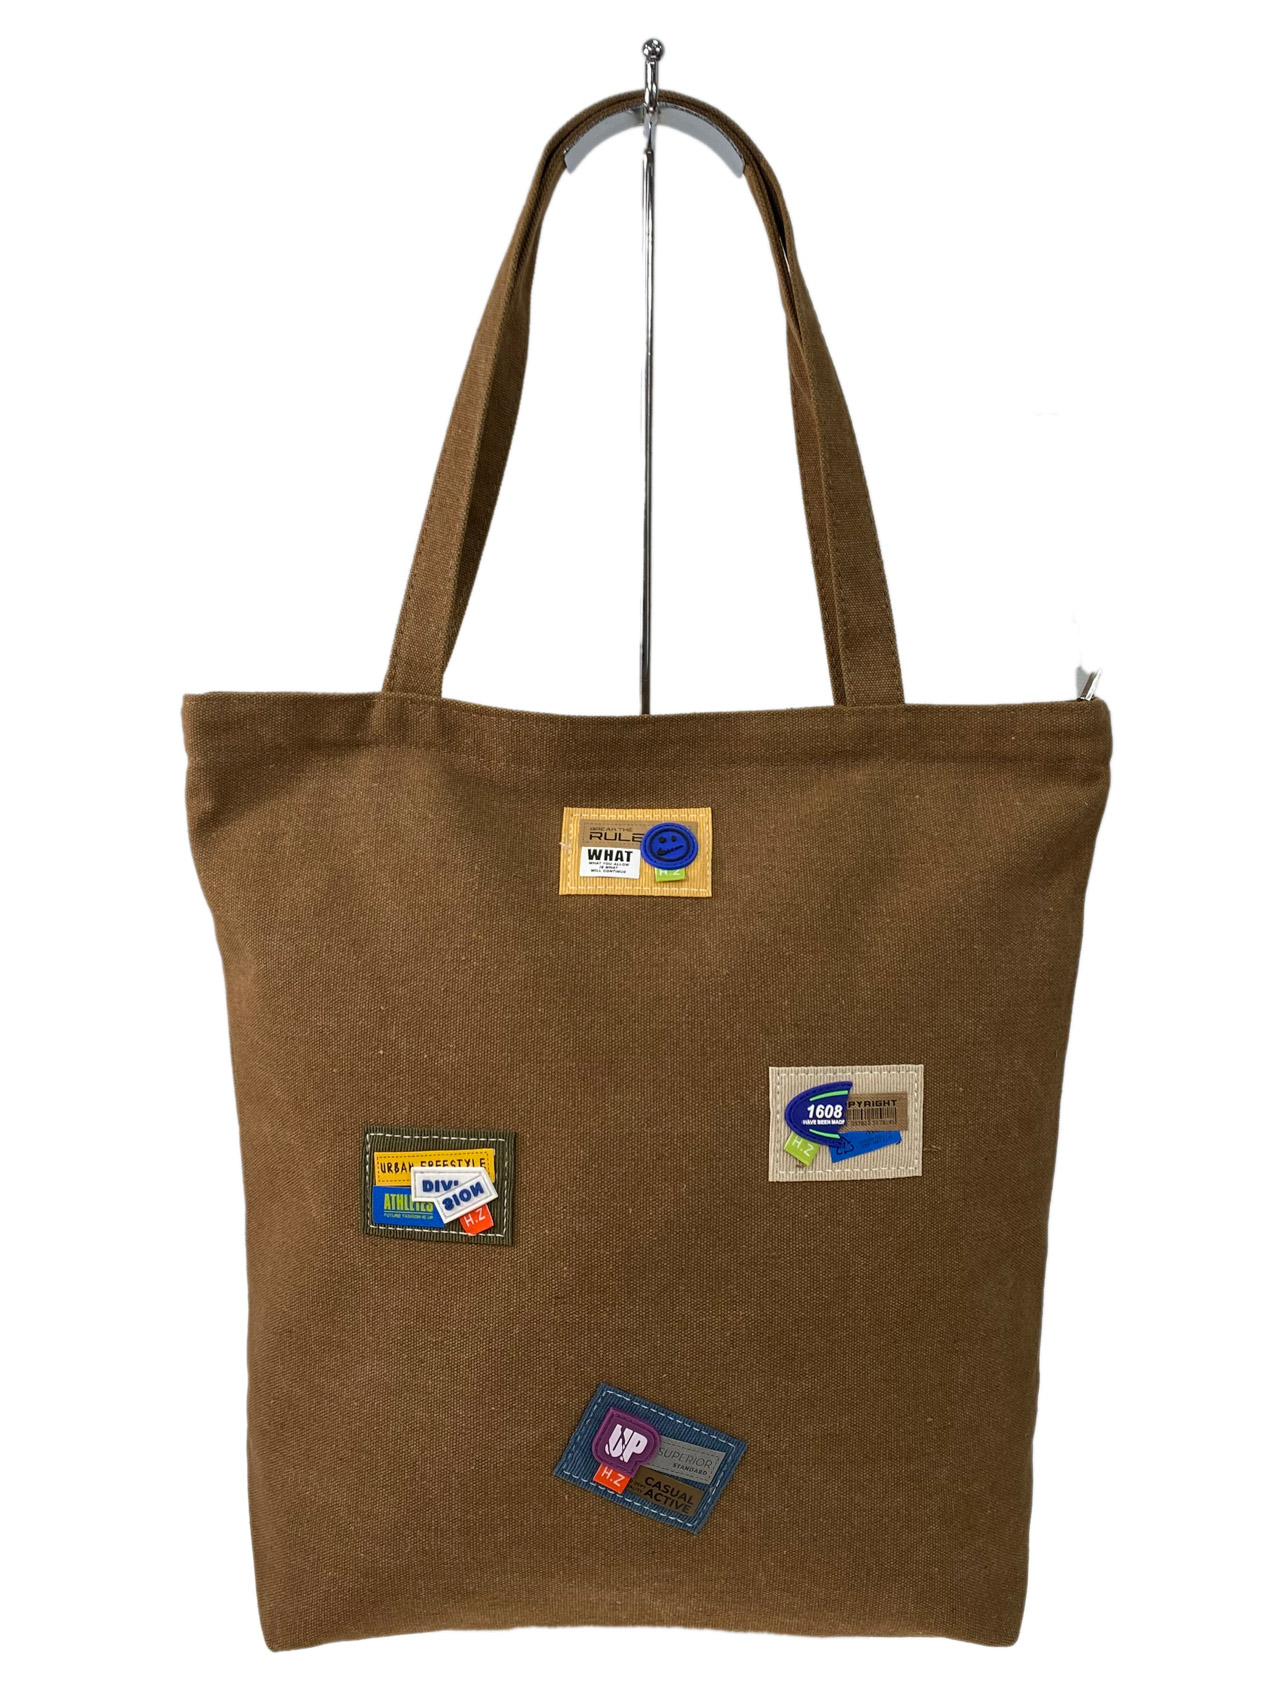 Женская сумка шоппер из текстиля, цвет коричневый